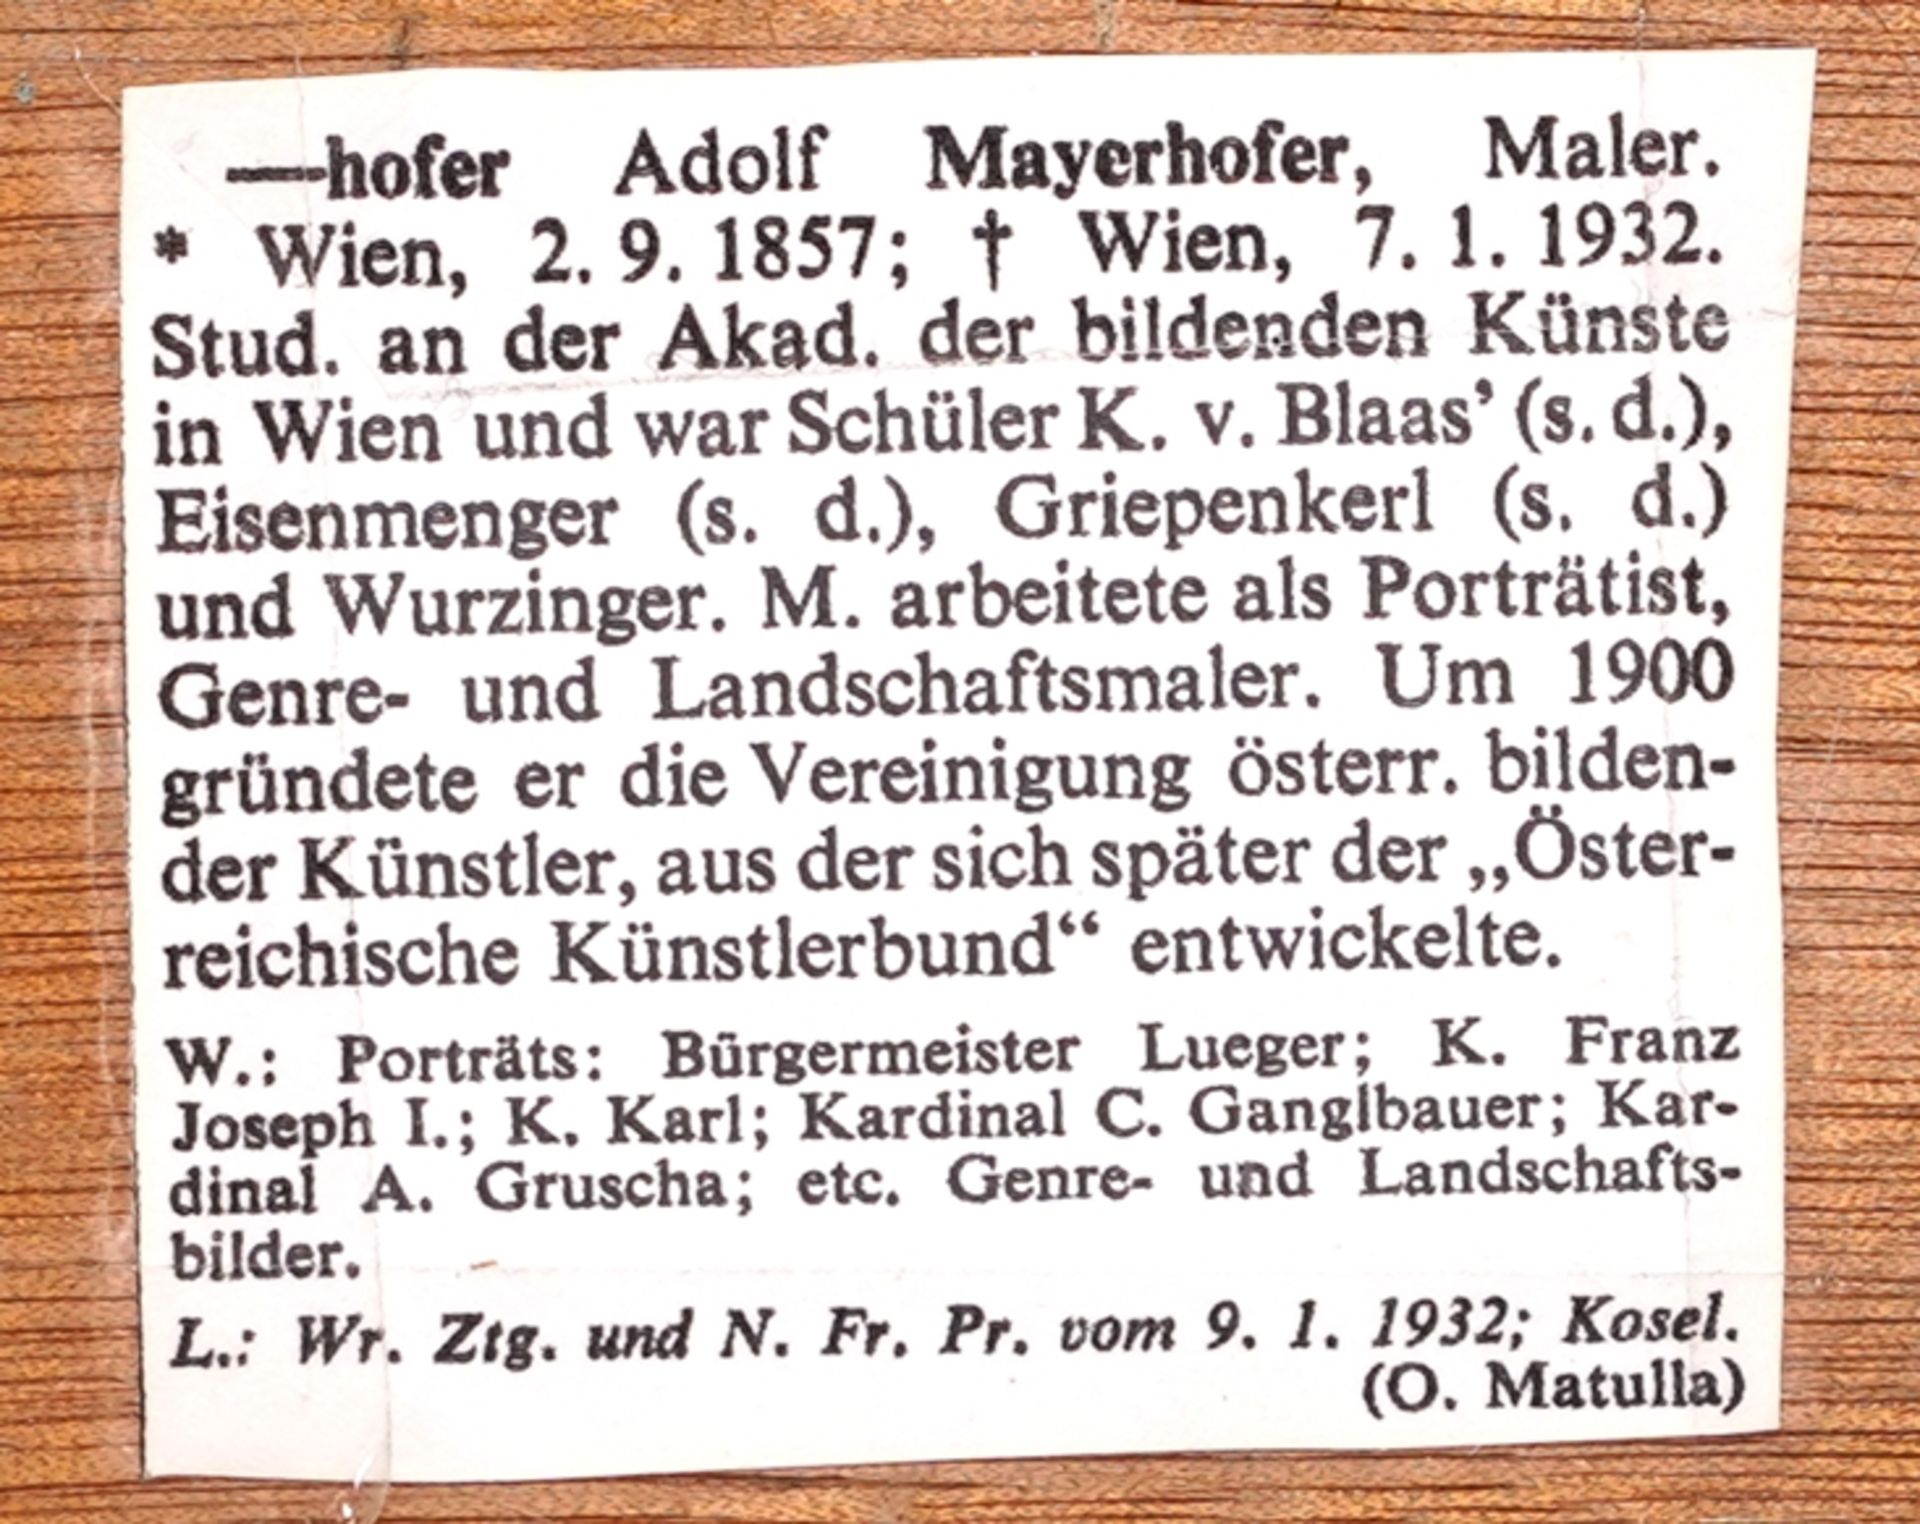 Mayerhofer, Adolf - Image 3 of 4